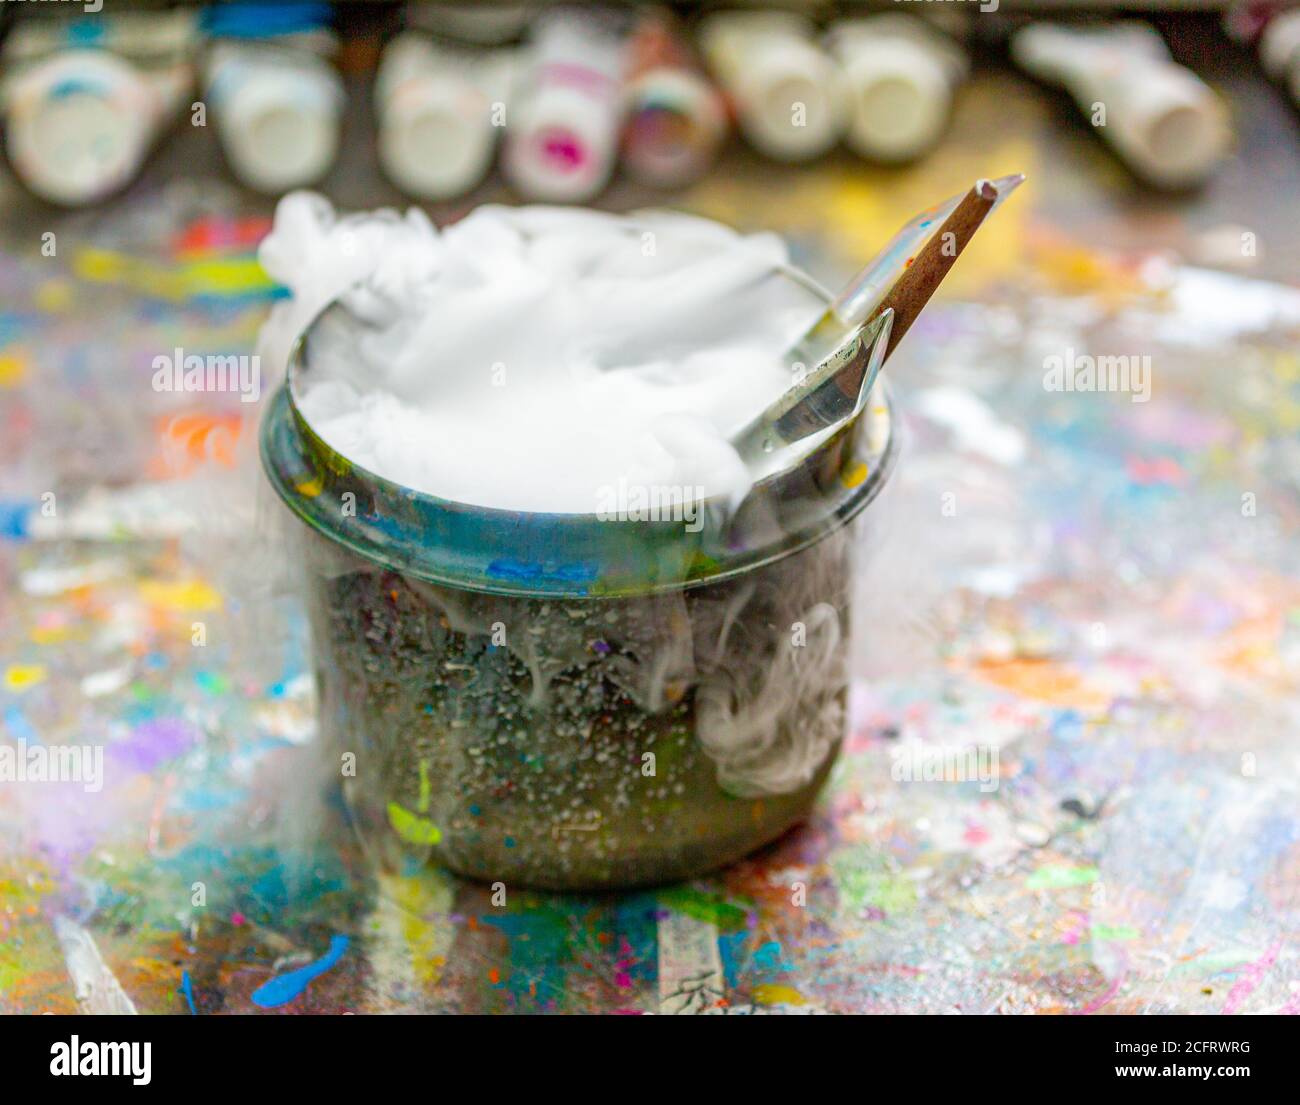 Künstlerpinsel in einem sprudelnden Behälter mit Wasser Stockfoto